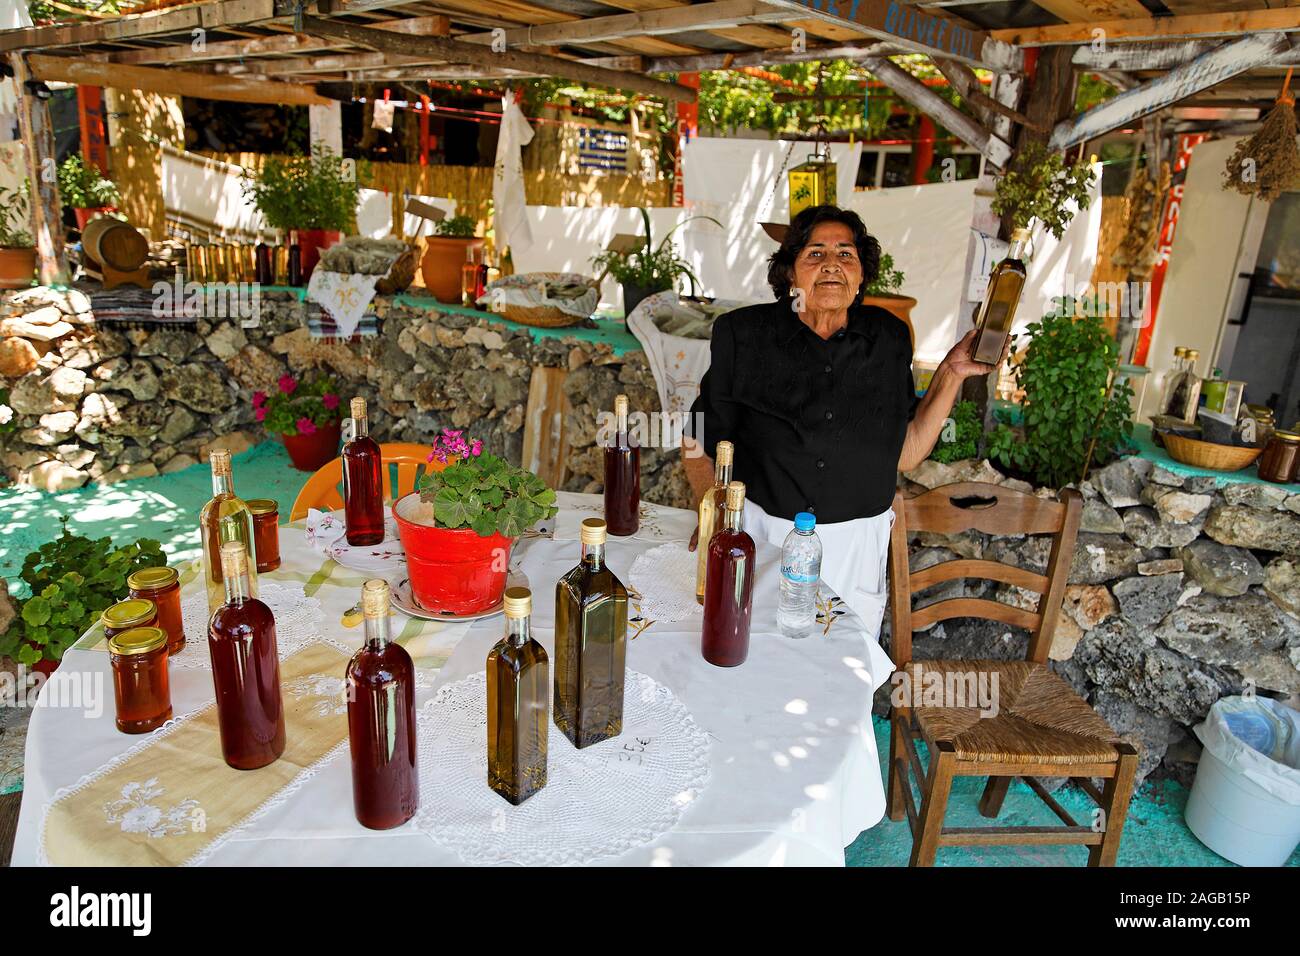 Femme grecque, vend des produits locaux, tels que l'huile d'olive, l'île de Zakynthos, Grèce Banque D'Images